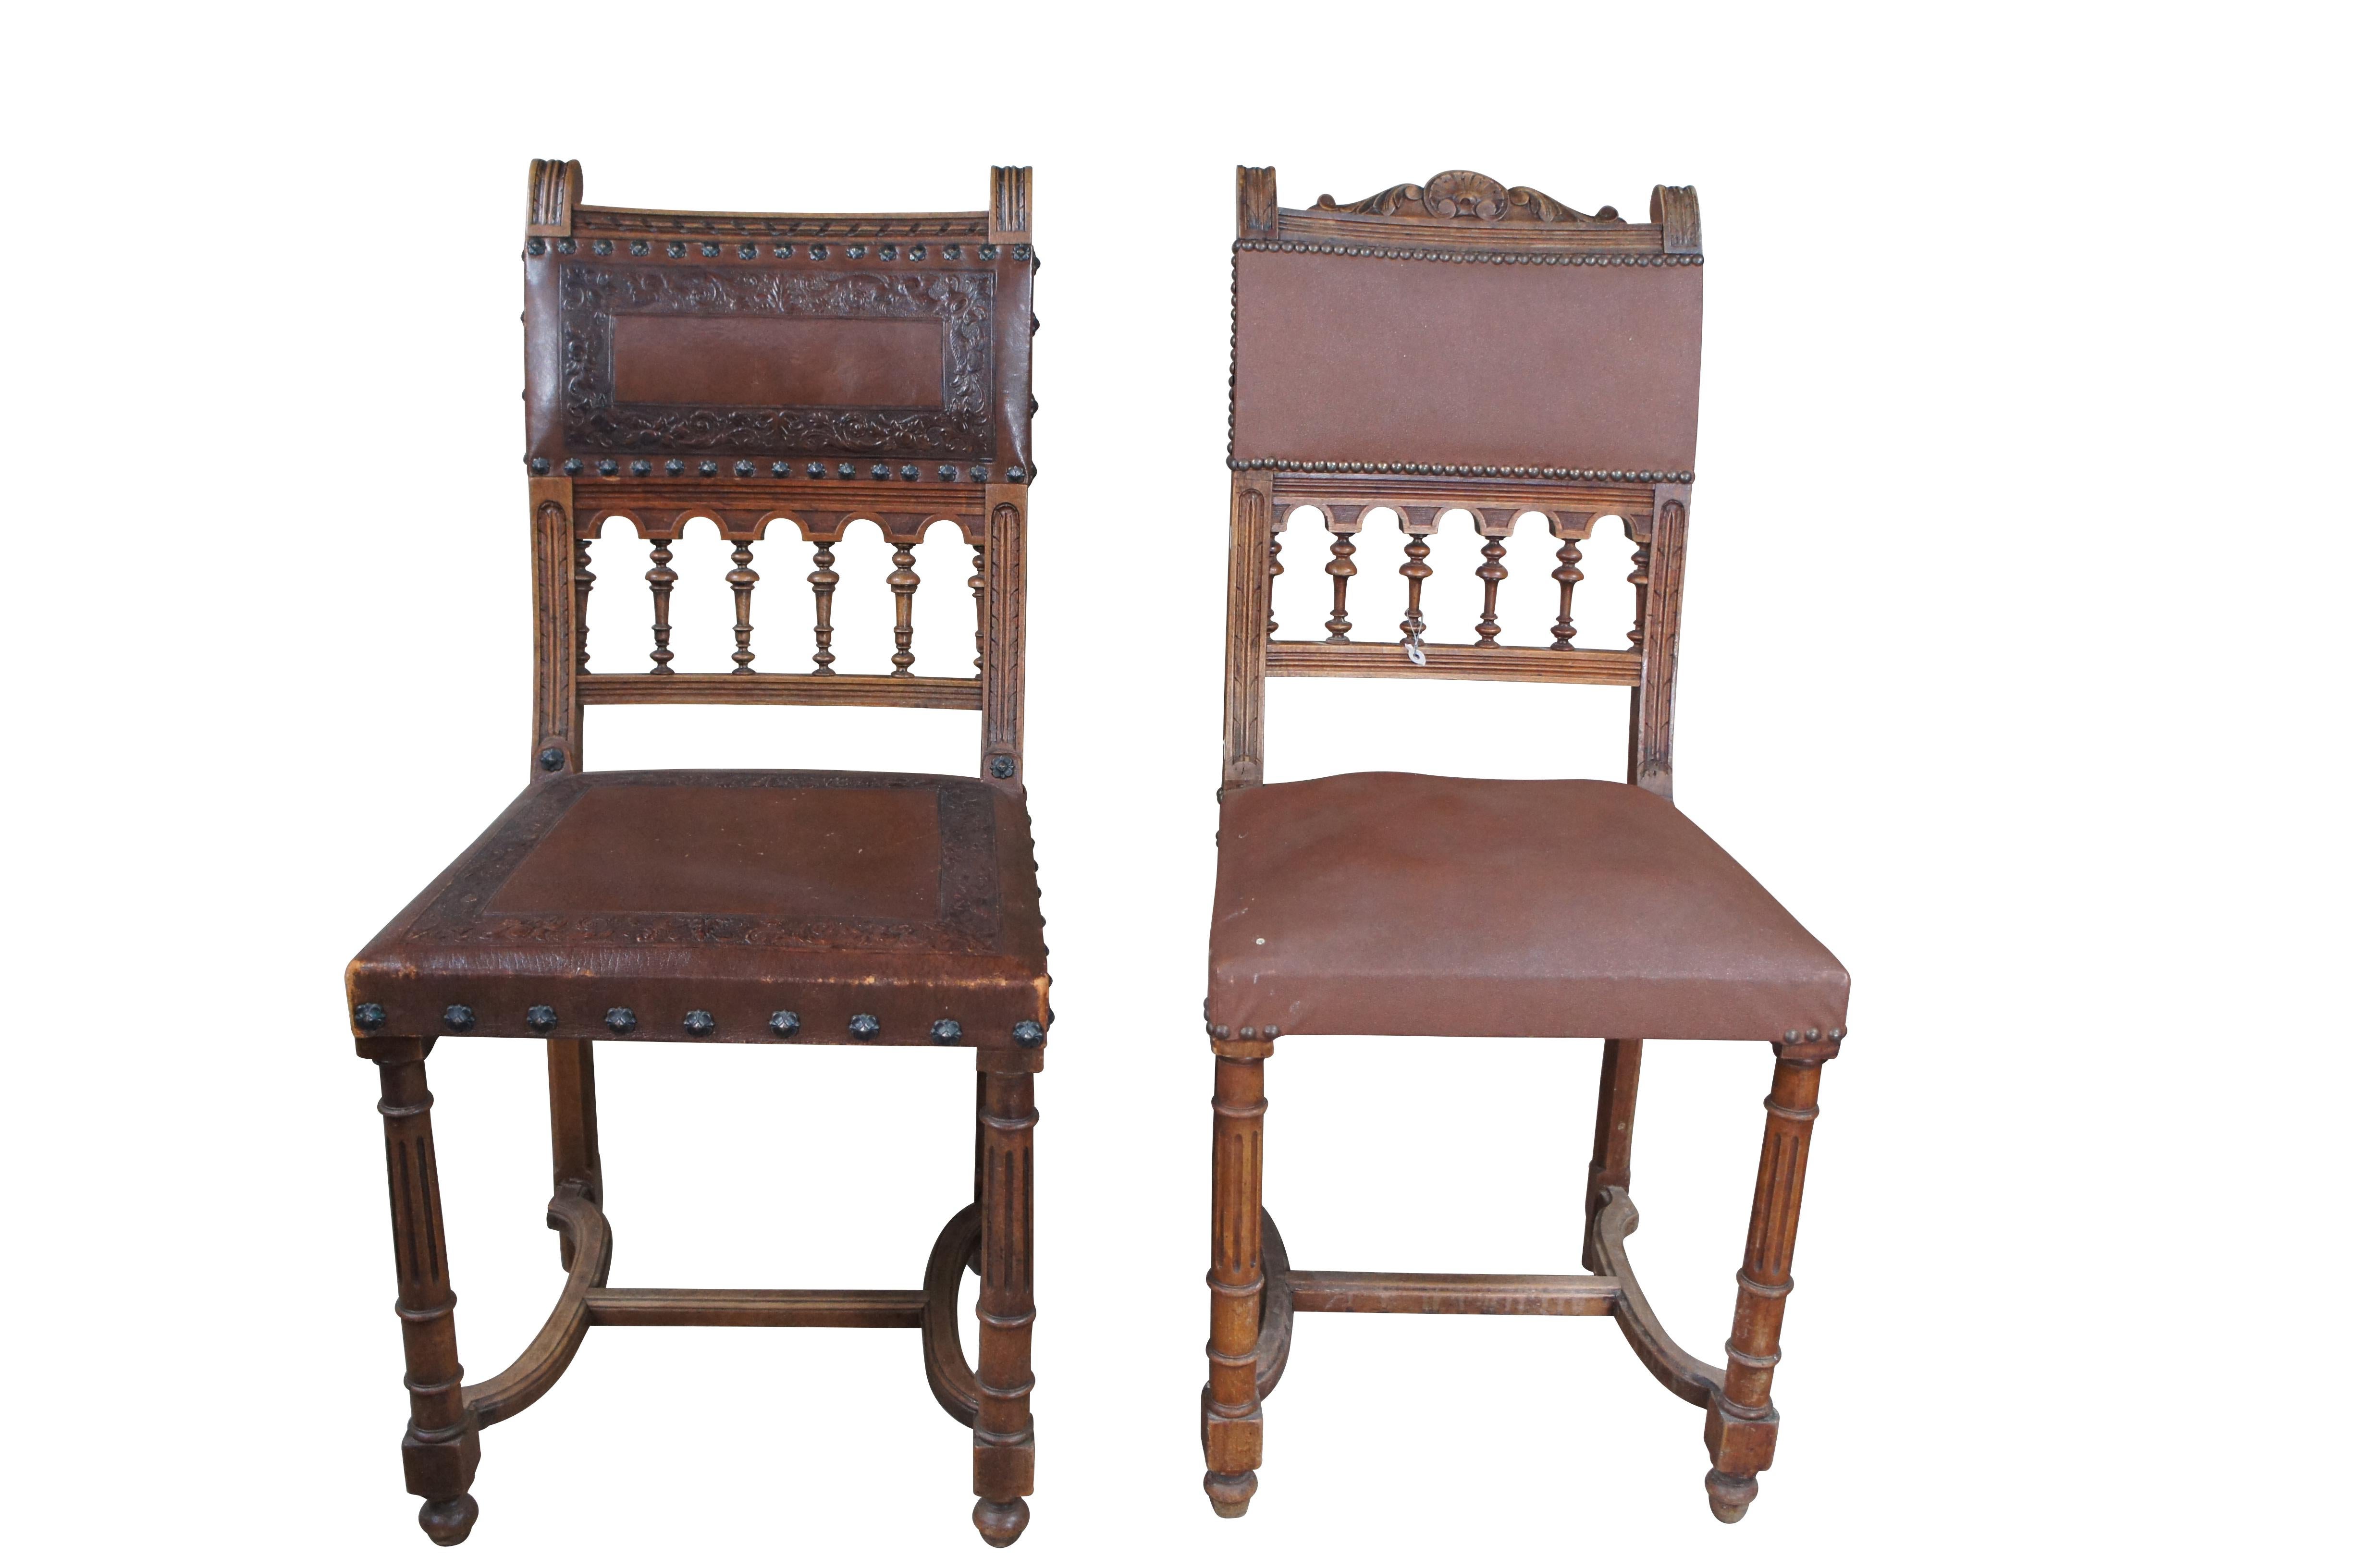 Lot de quatre chaises de salle à manger de style Henry II. La construction est en bois dur et les dossiers sont sculptés et moulés. Les chaises sont soutenues par des pieds cannelés avec des brancards en H et des pieds en chignon. Rembourré en cuir